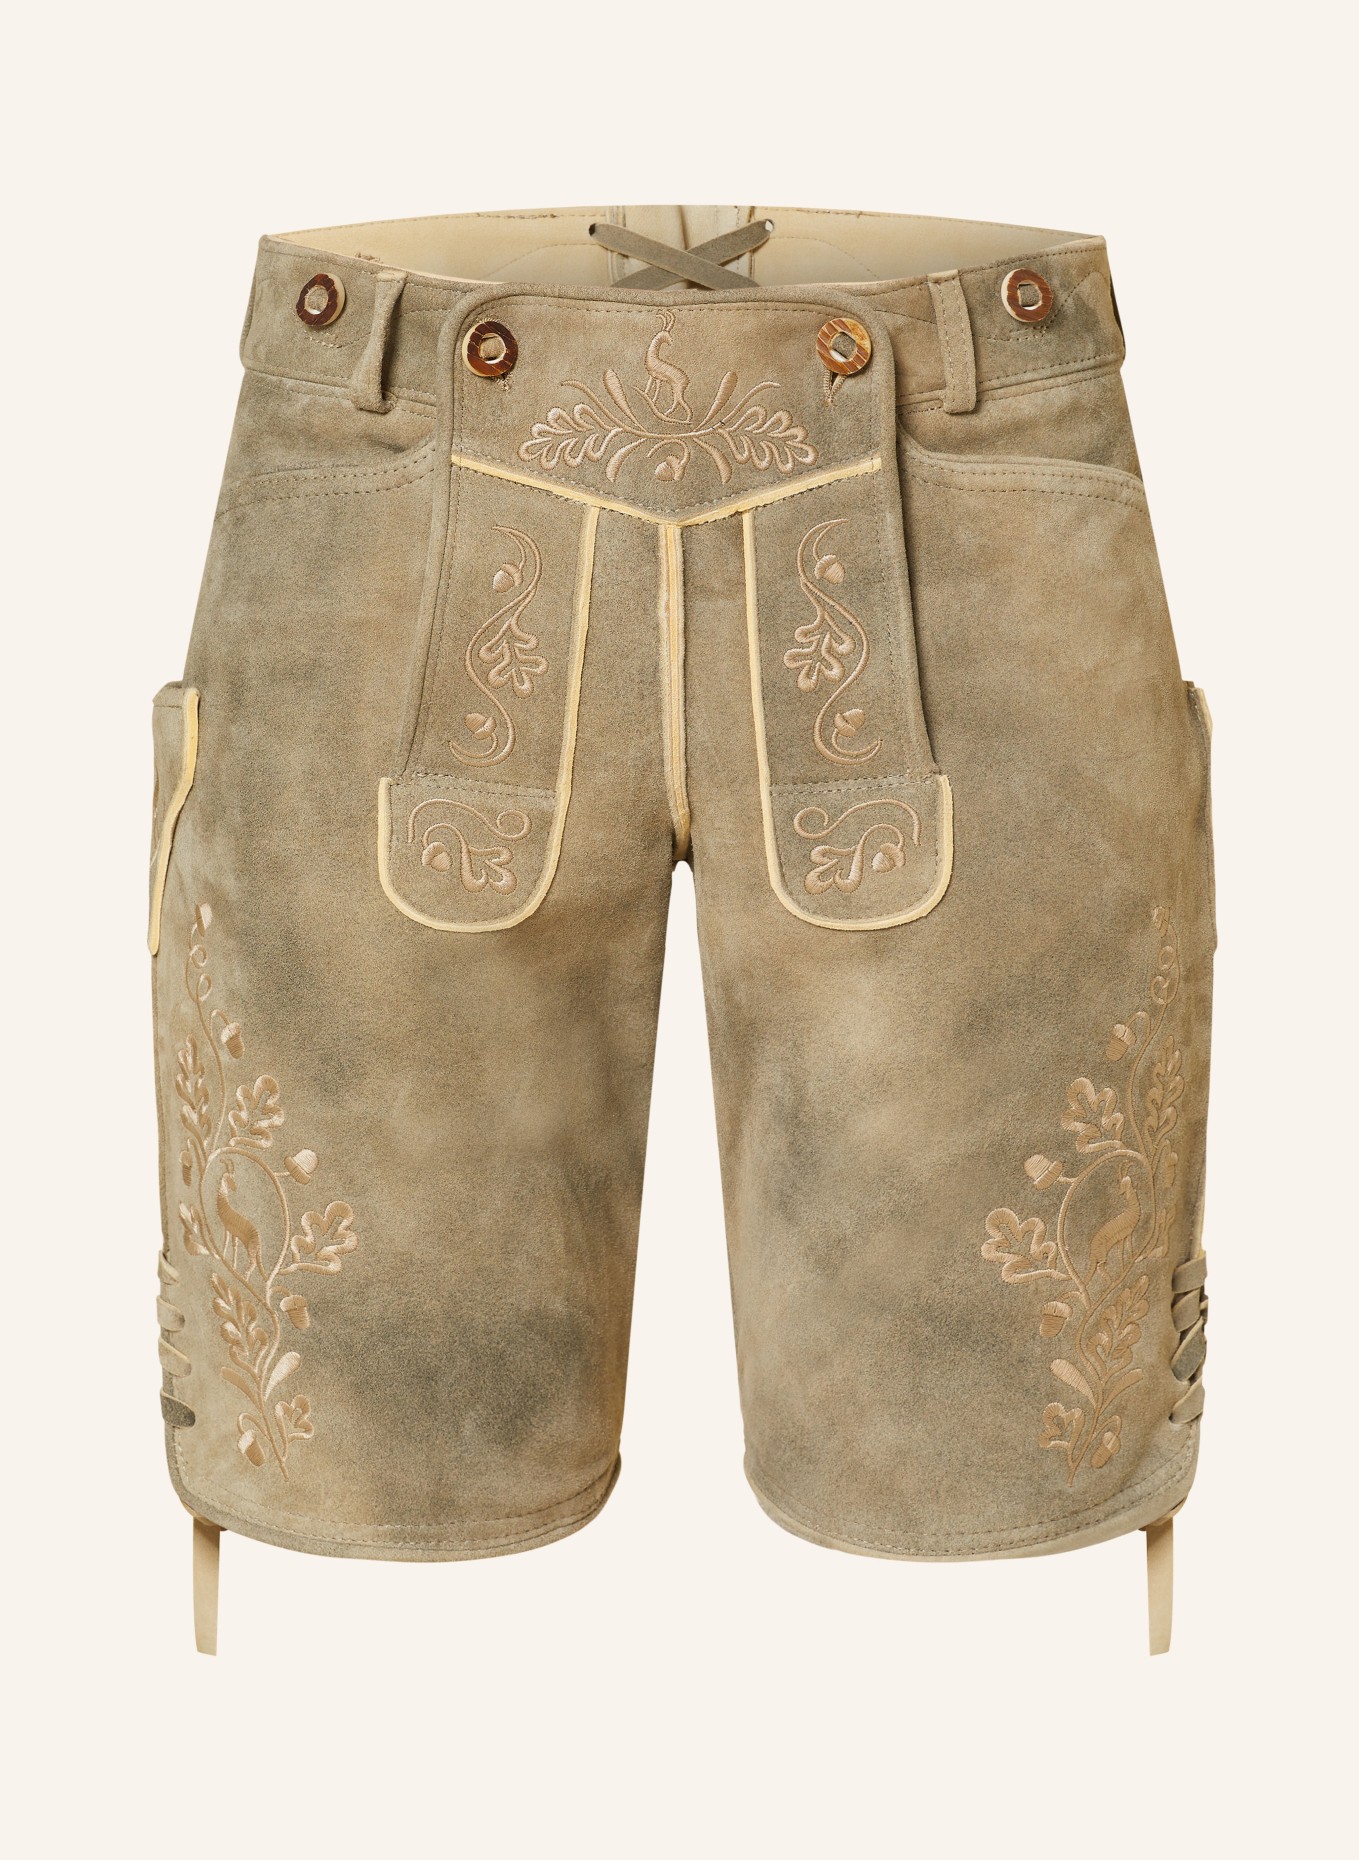 OSTARRICHI Spodnie skórzane w stylu ludowym LUDWIG, Kolor: SZAROBRĄZOWY (Obrazek 1)